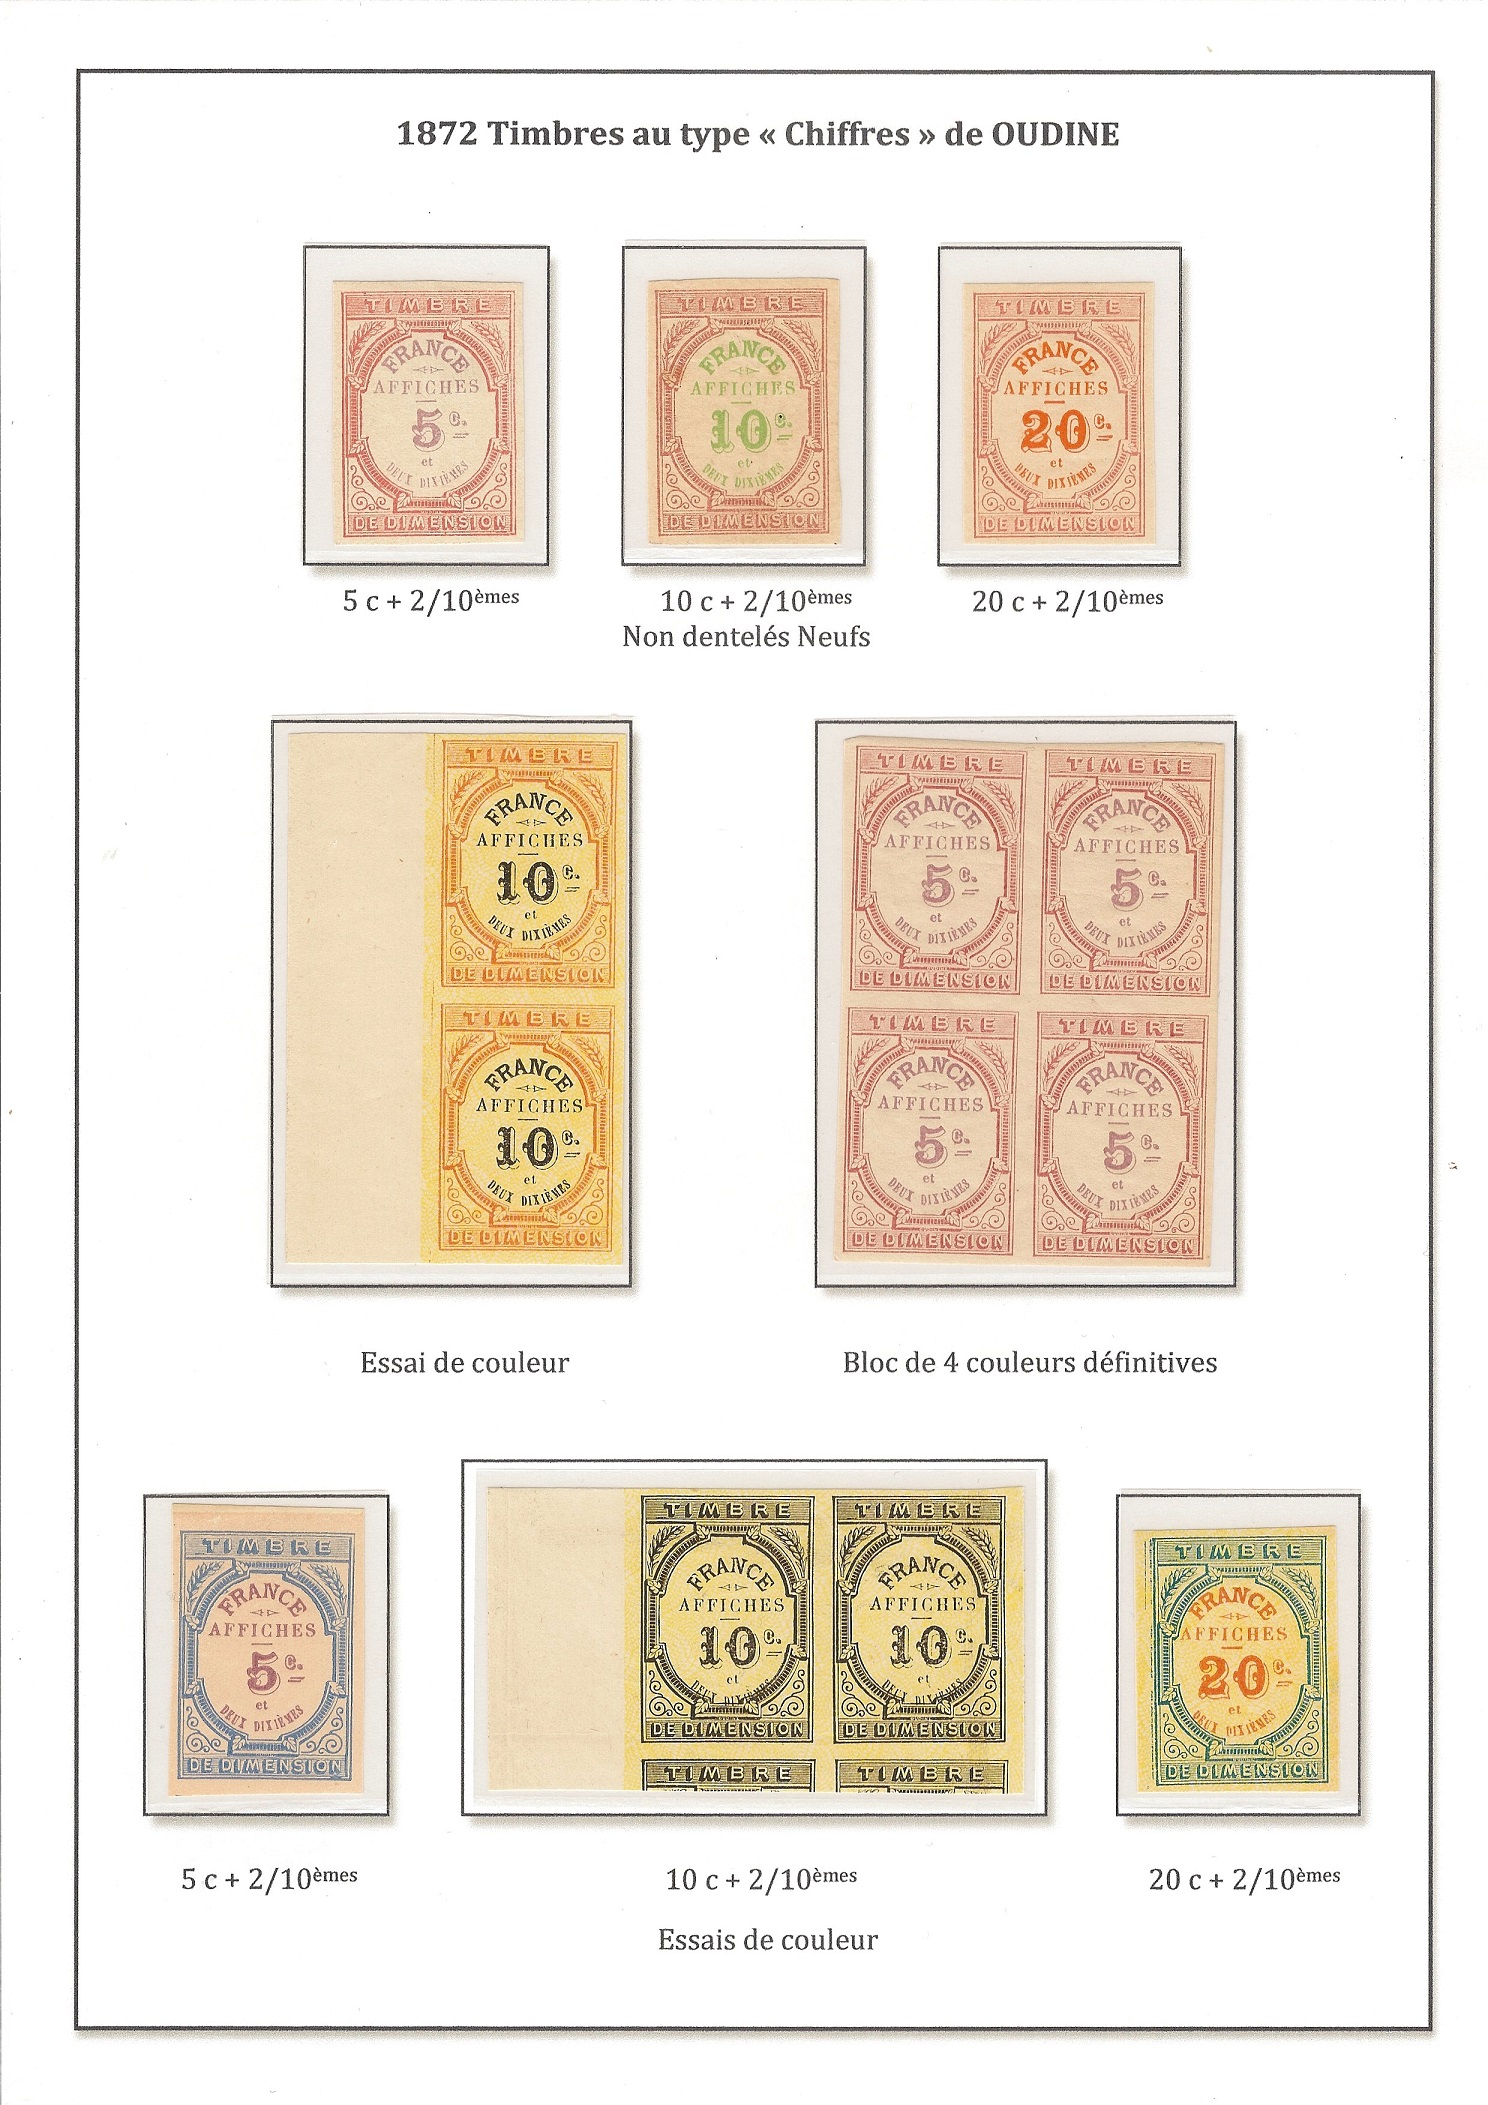 Les timbres nationaux, mobiles pour affiches p. 12